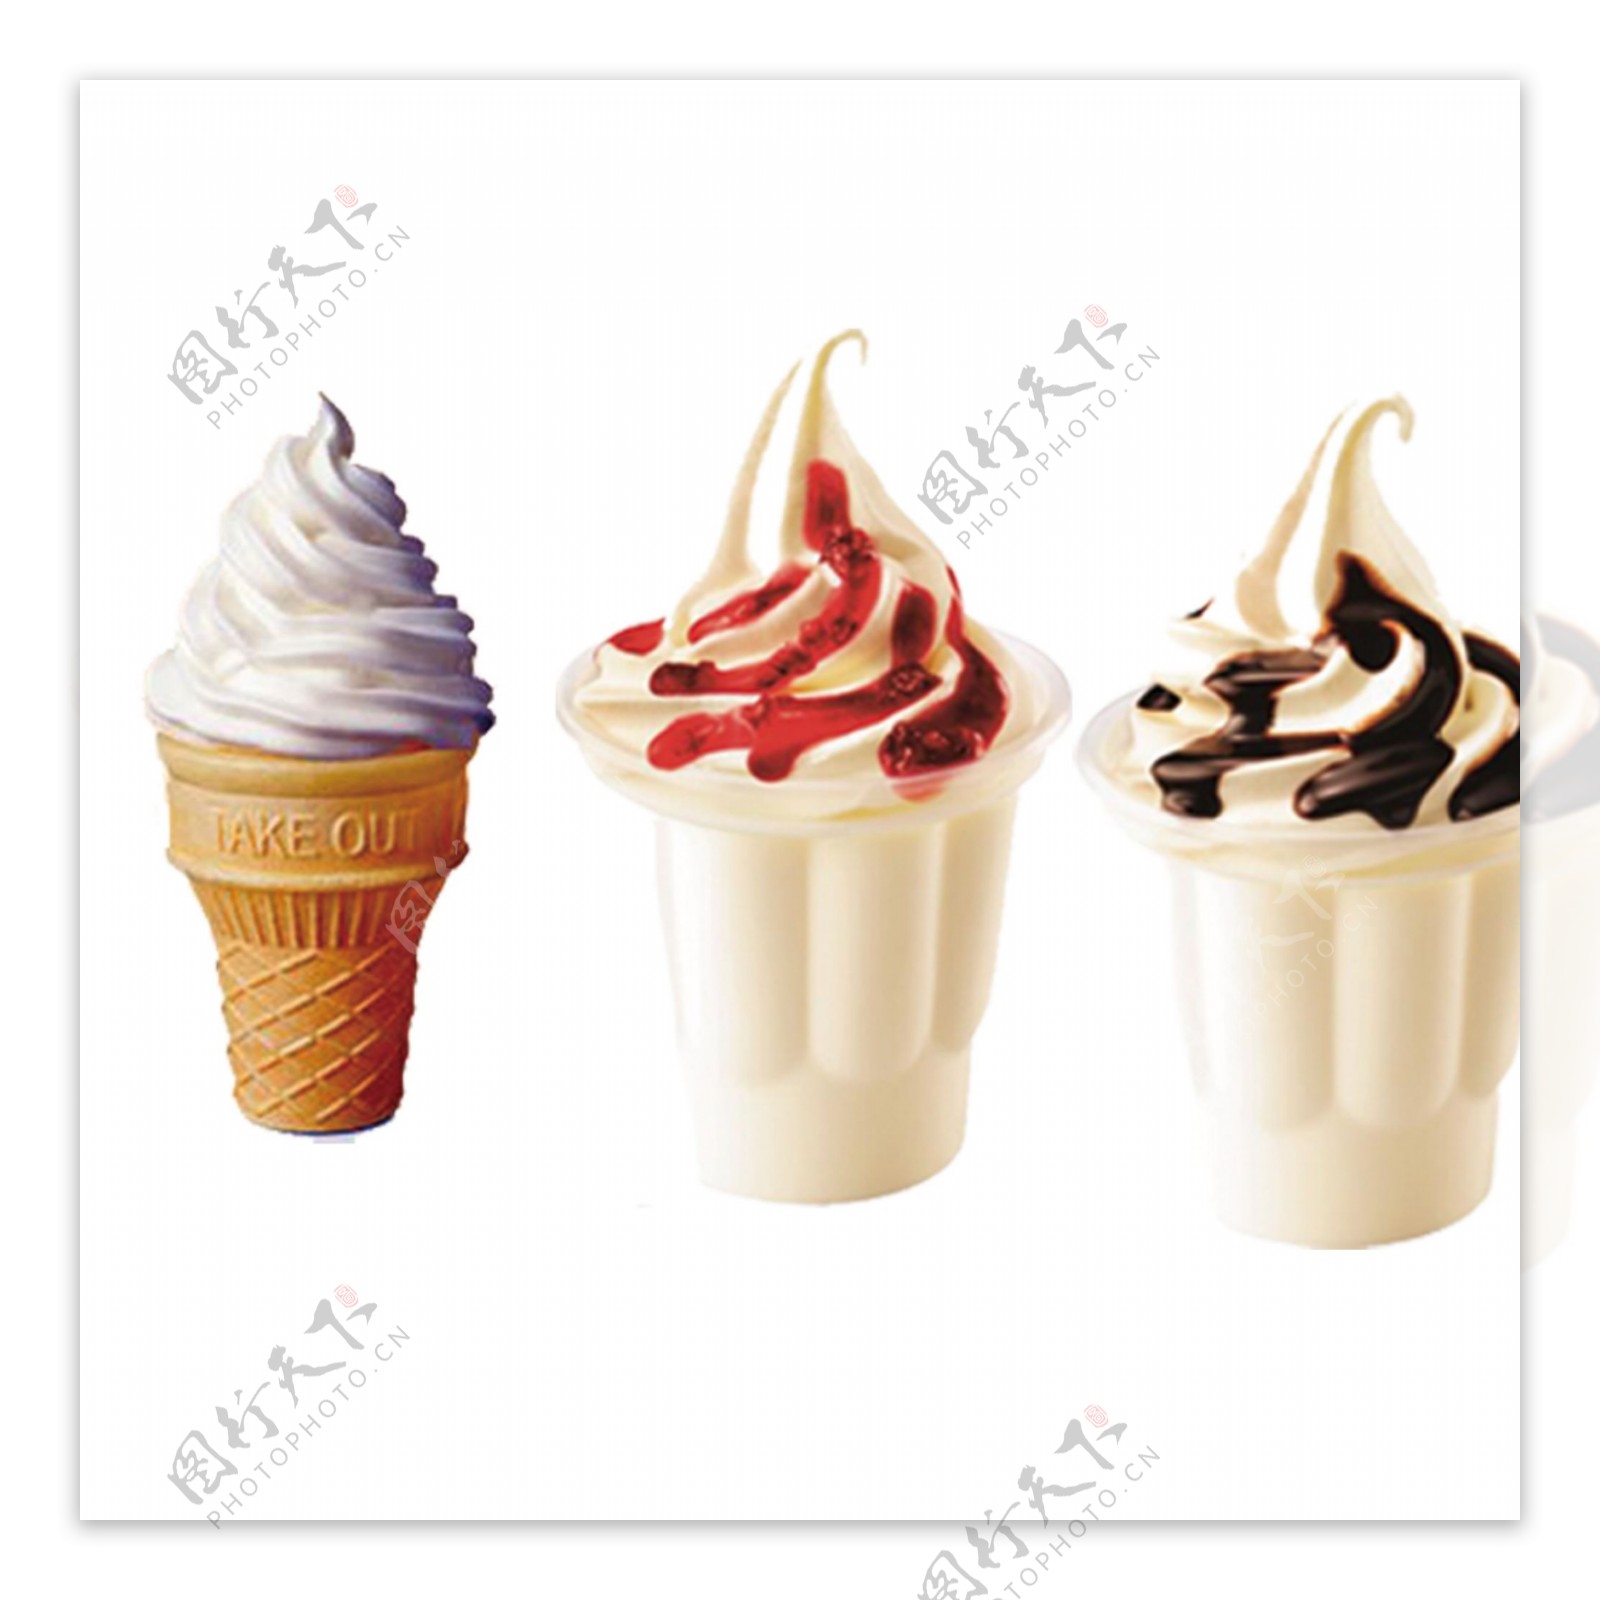 意大利冰淇凌圣代冰淇淋的分类 库存图片. 图片 包括有 美食, 冻结, 奶油, 缓和, 承办酒席, 现代 - 90630975